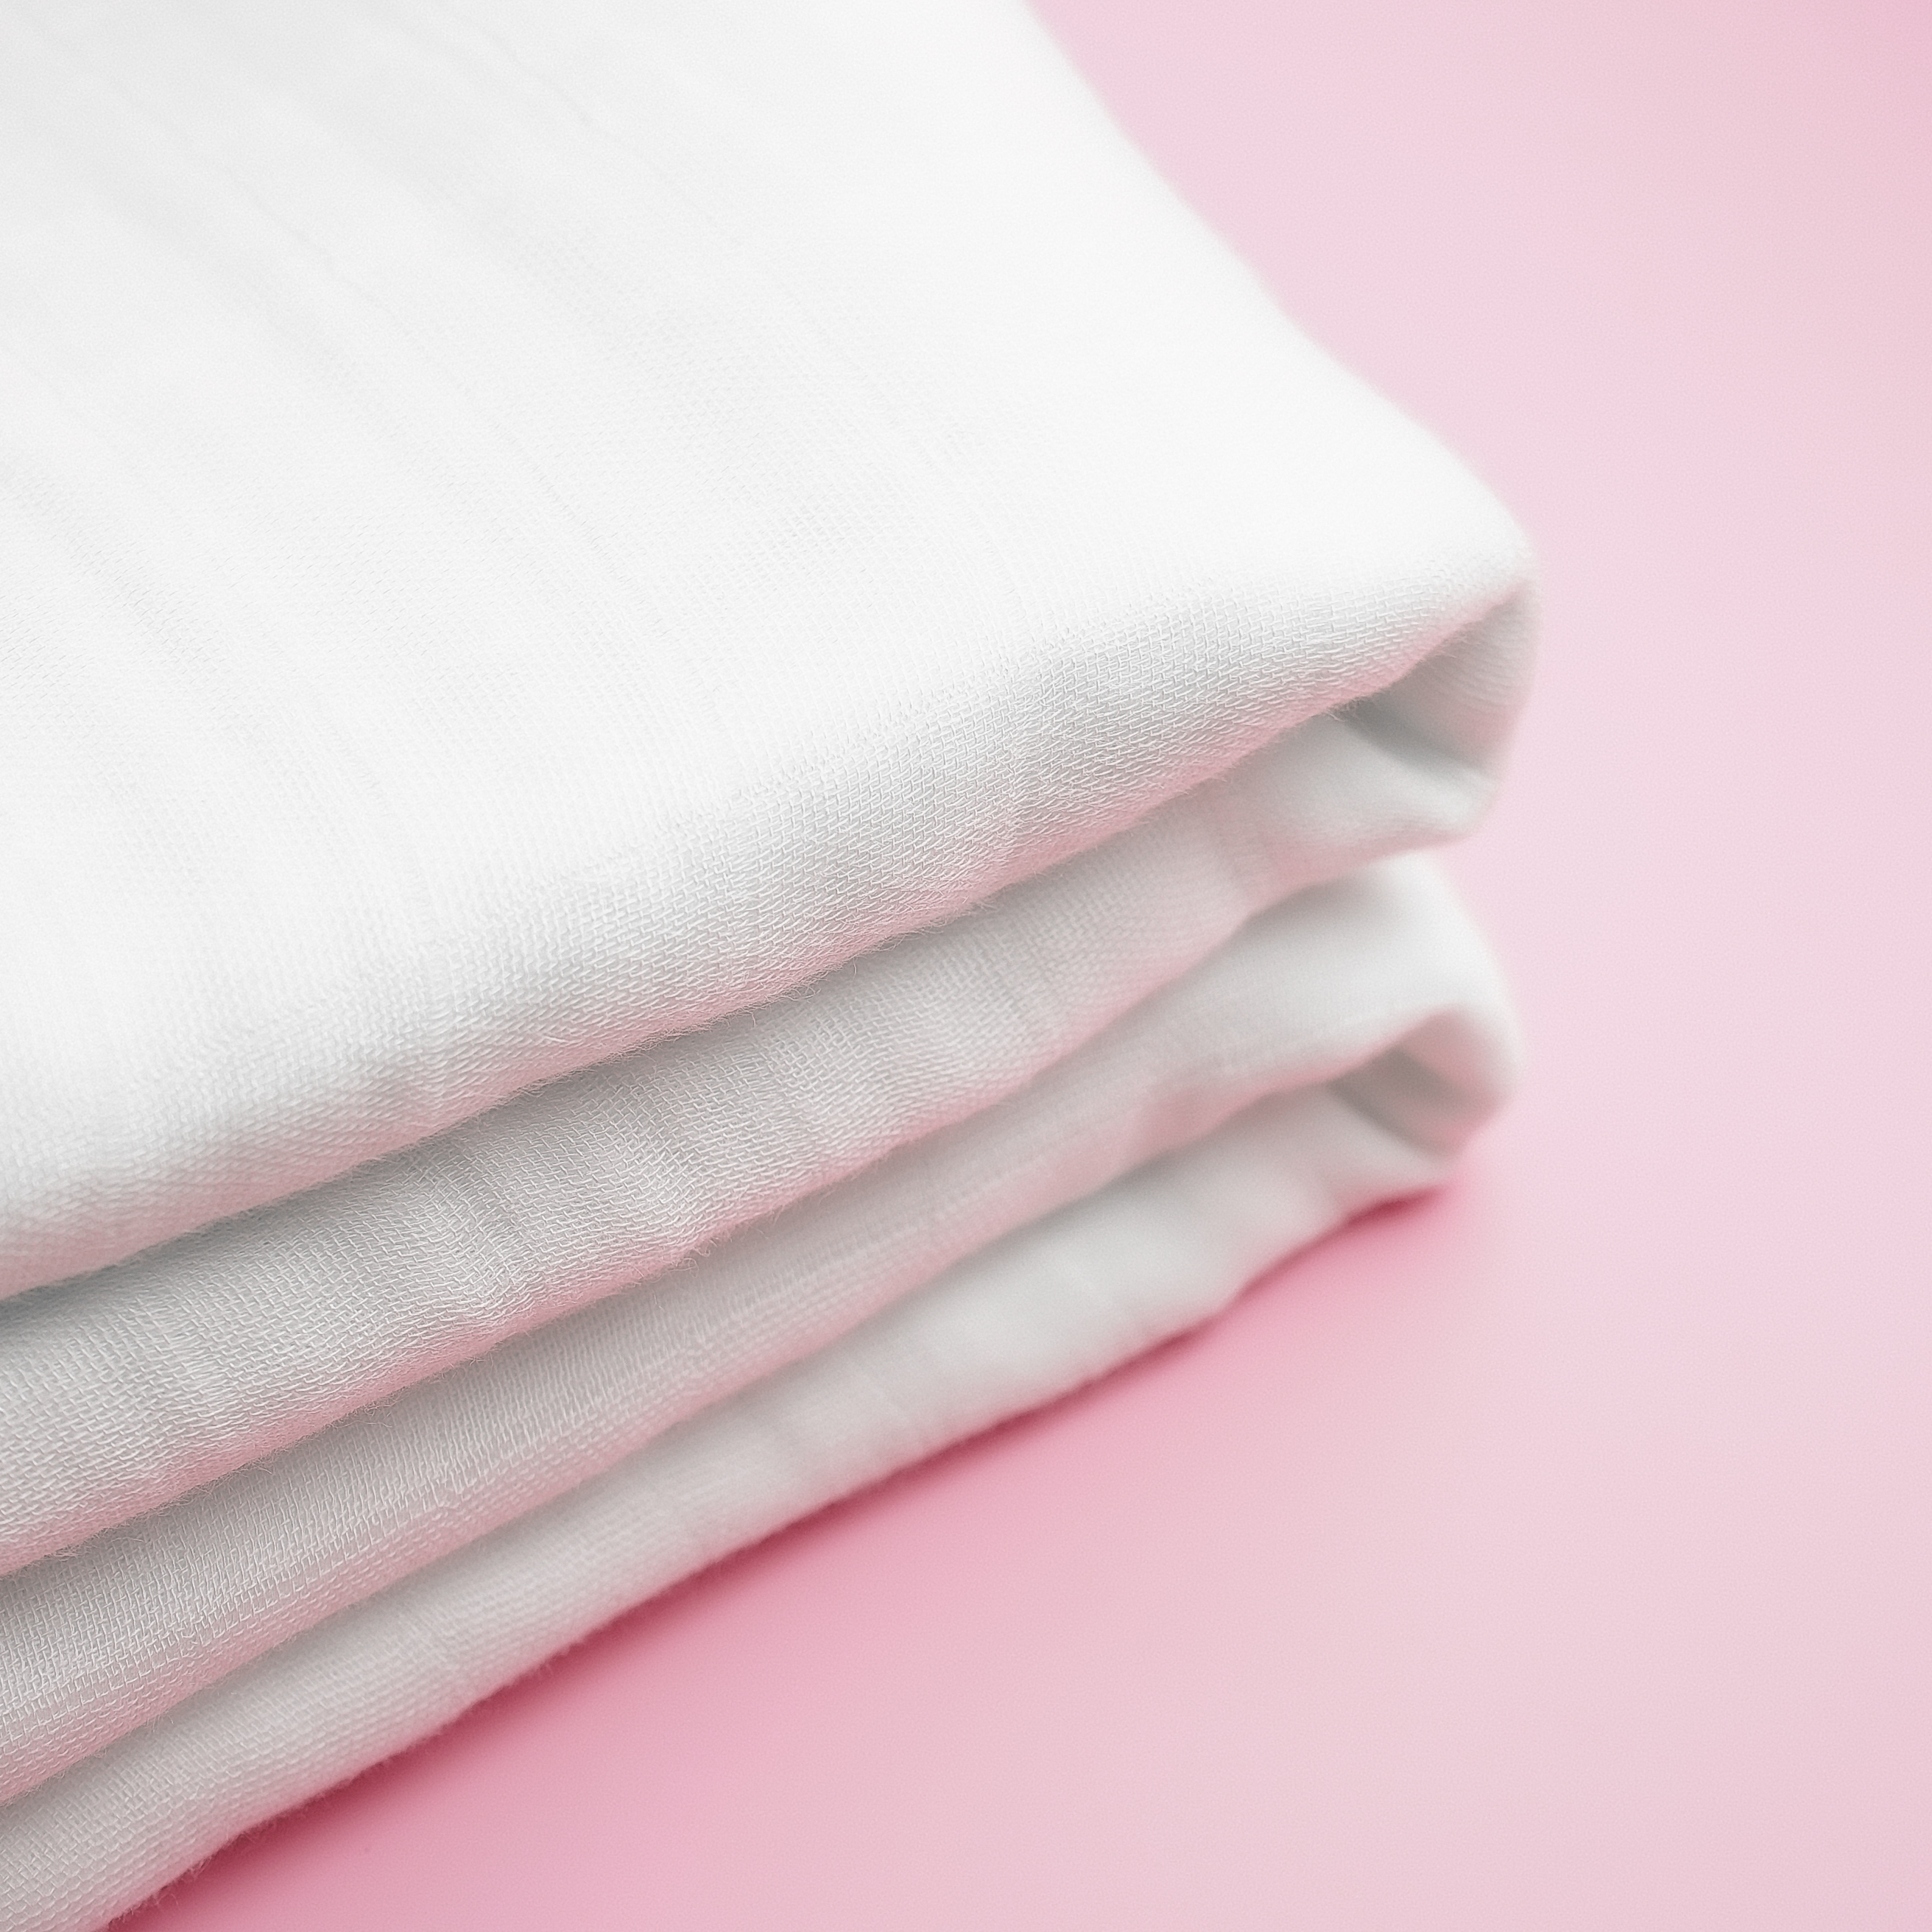 Khăn tắm khăn quấn ủ bonny trắng 100% sợi tre 4 lớp siêu mềm mịn, thấm hút - ảnh sản phẩm 5